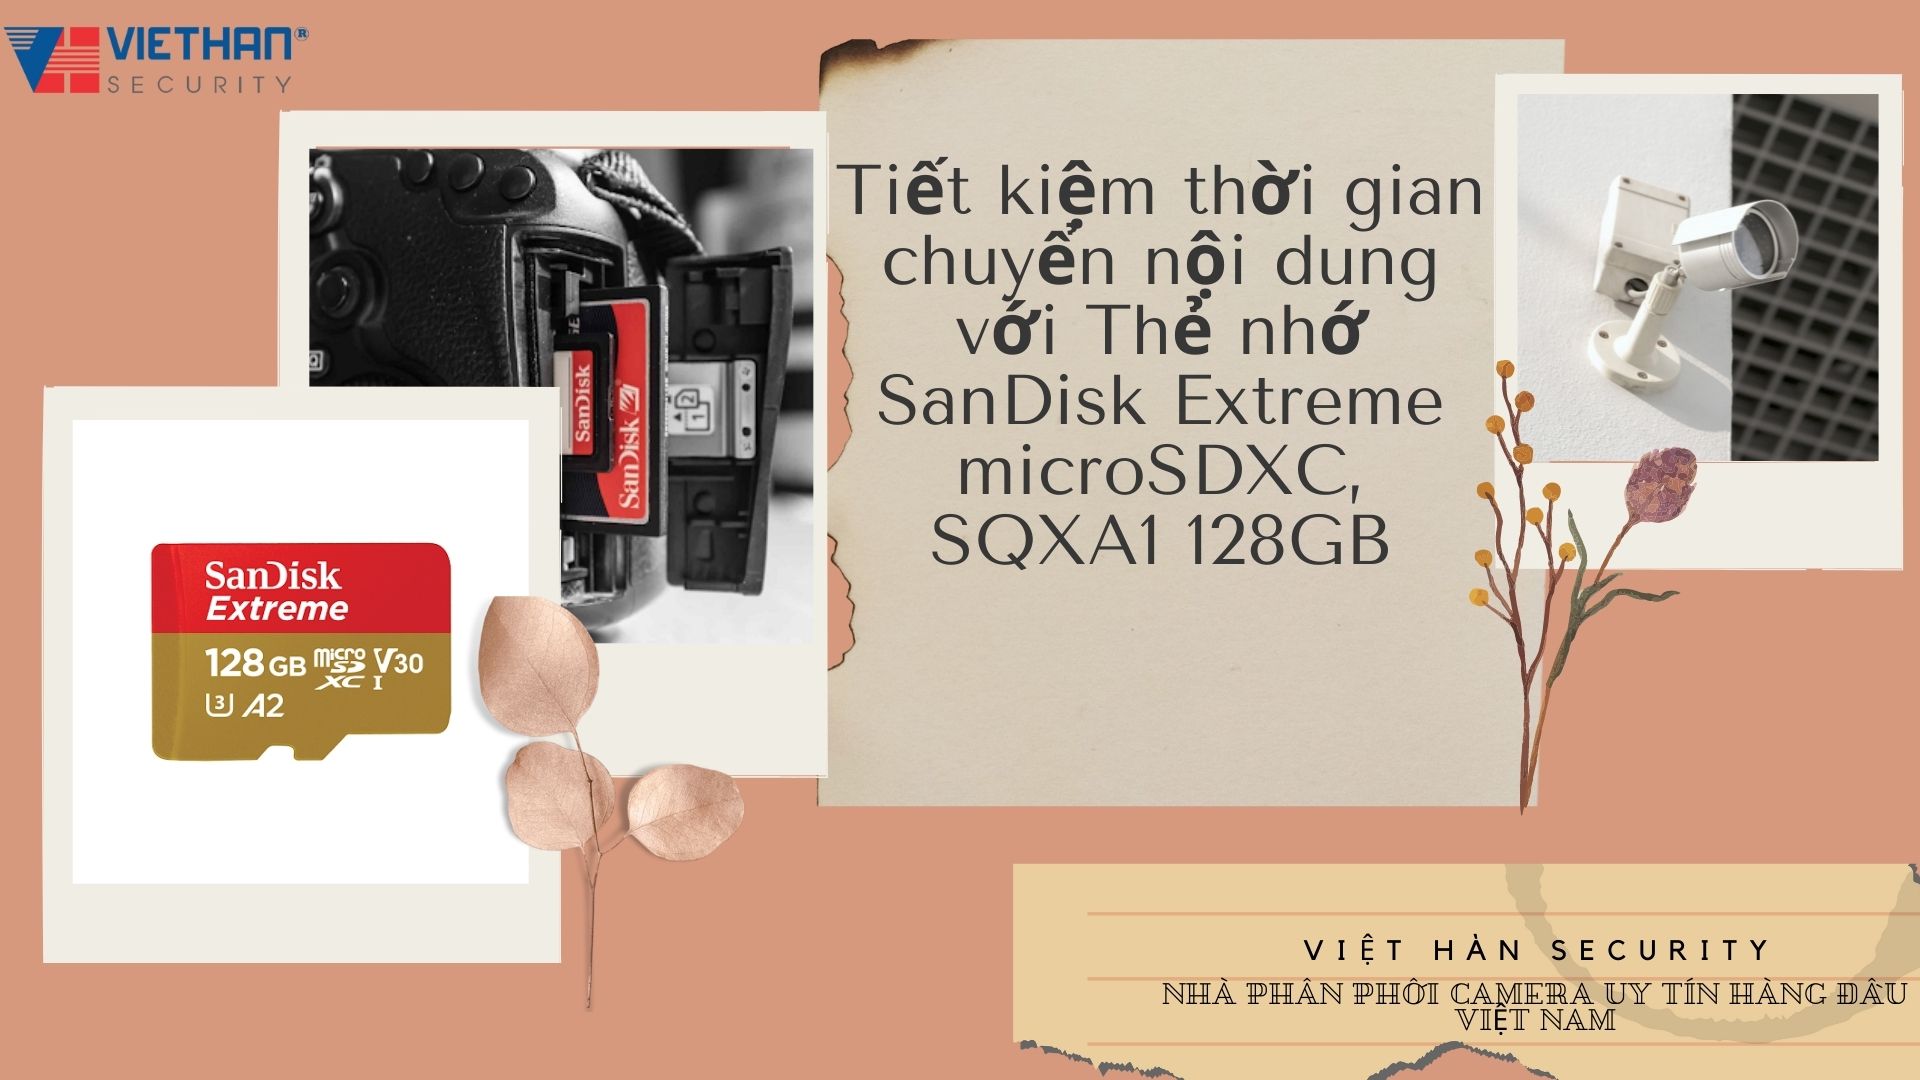 Tiết kiệm thời gian chuyển nội dung với Thẻ nhớ SanDisk Extreme microSDXC, SQXA1 128GB